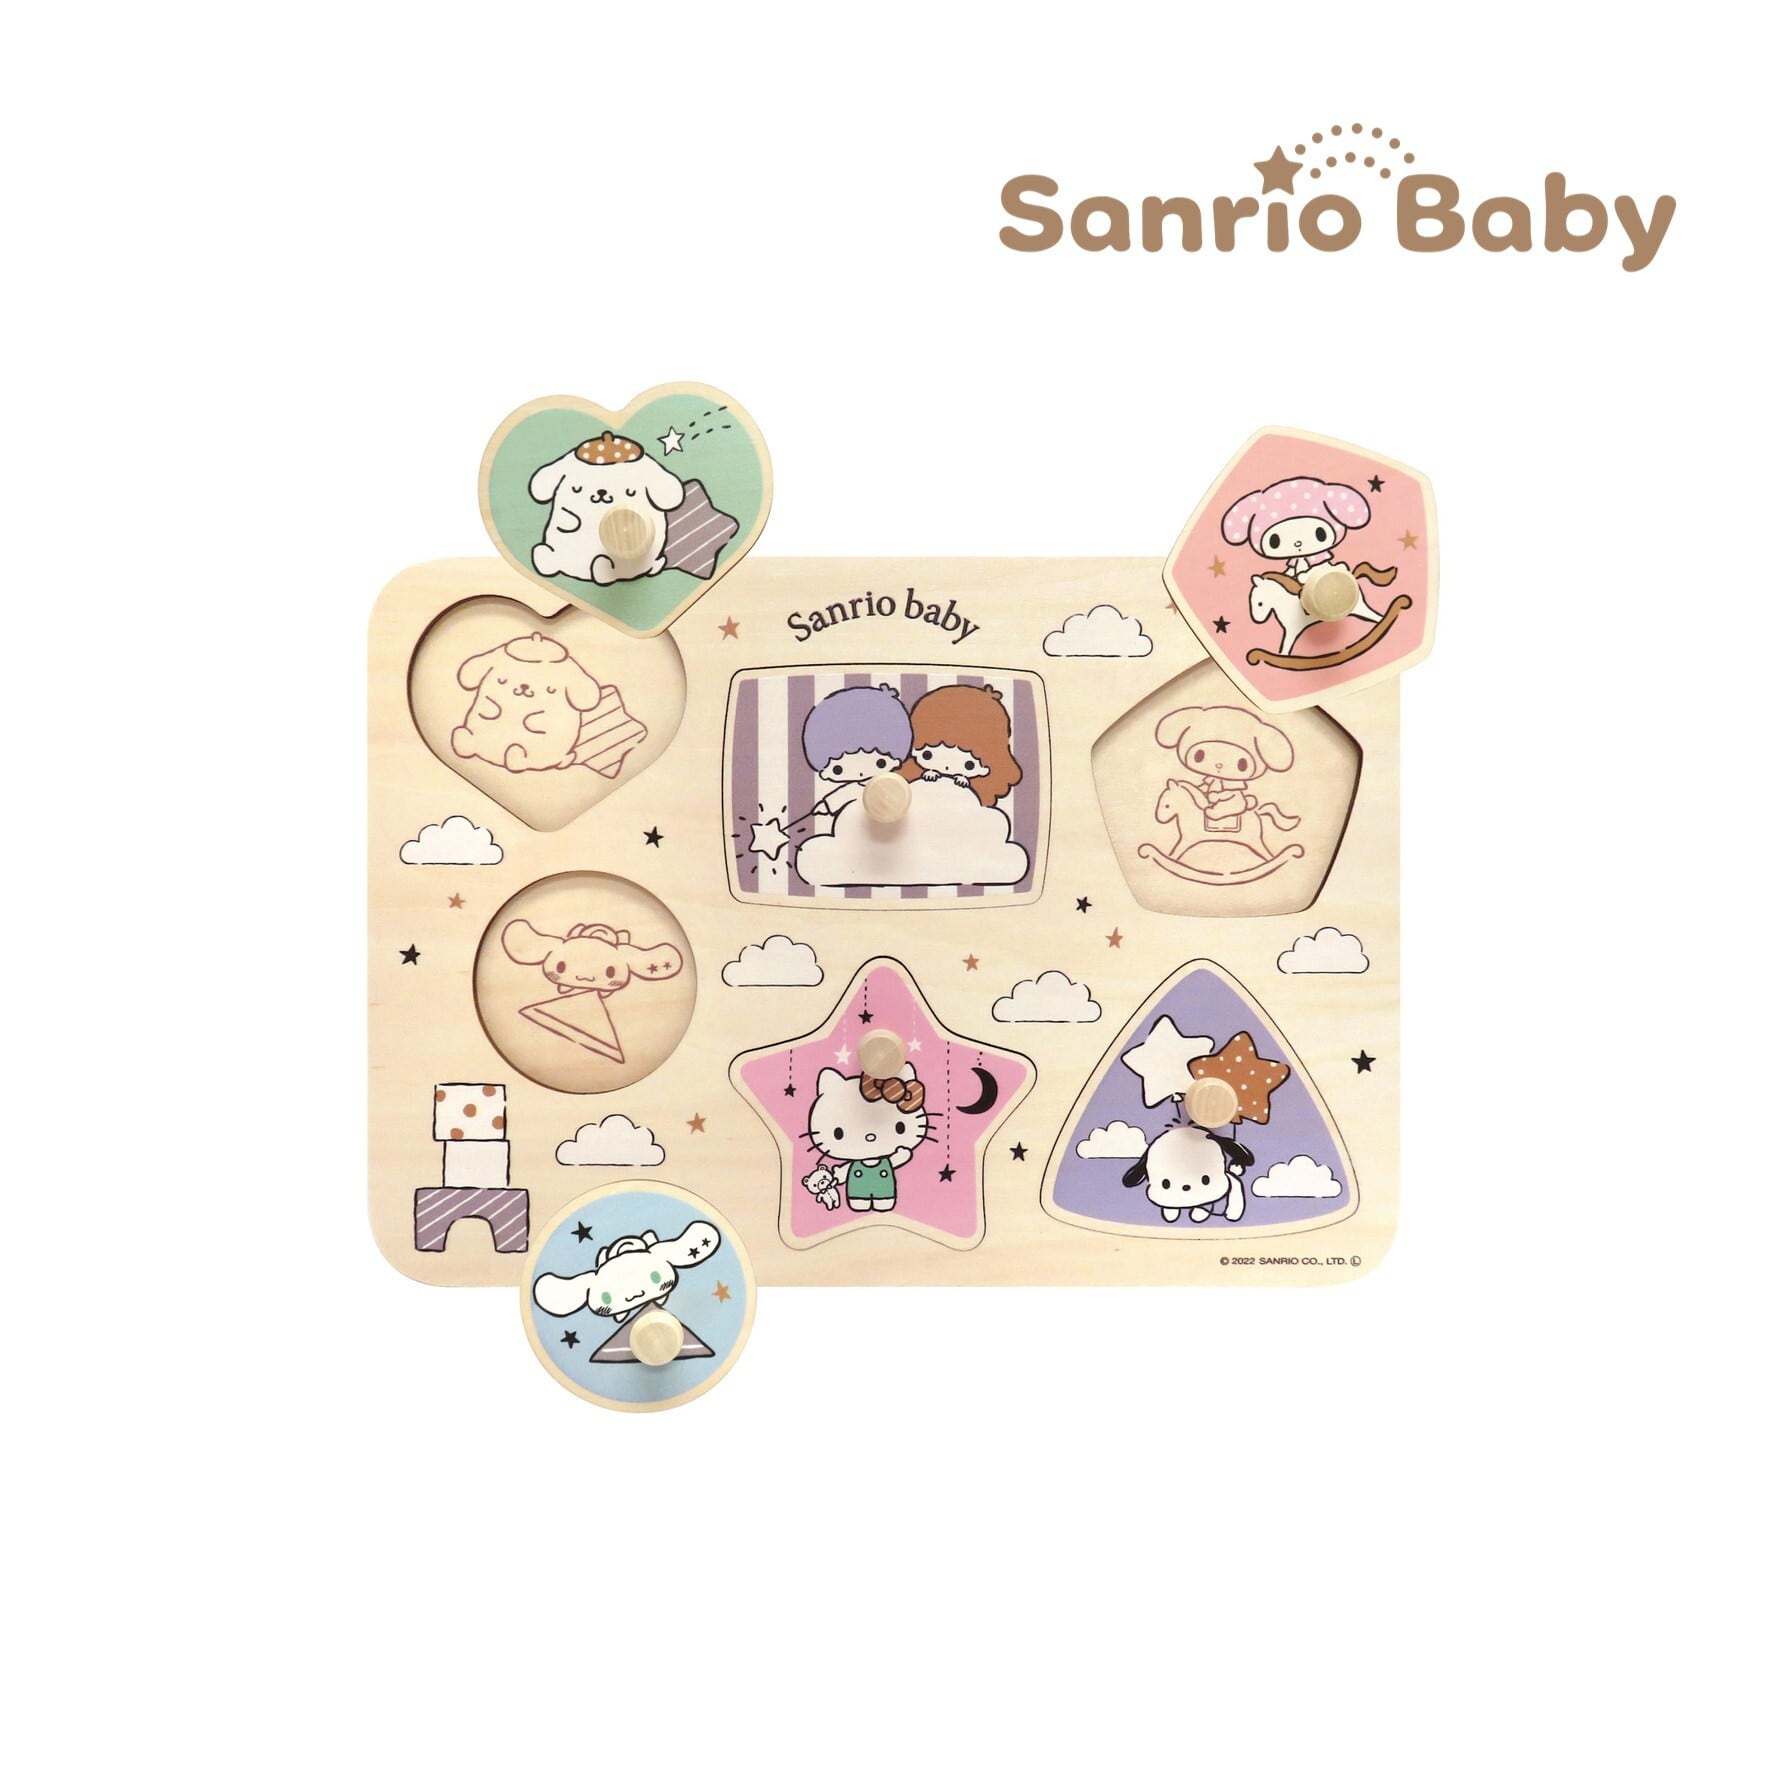 Sanrio baby / サンリオベビー ずけいパズル